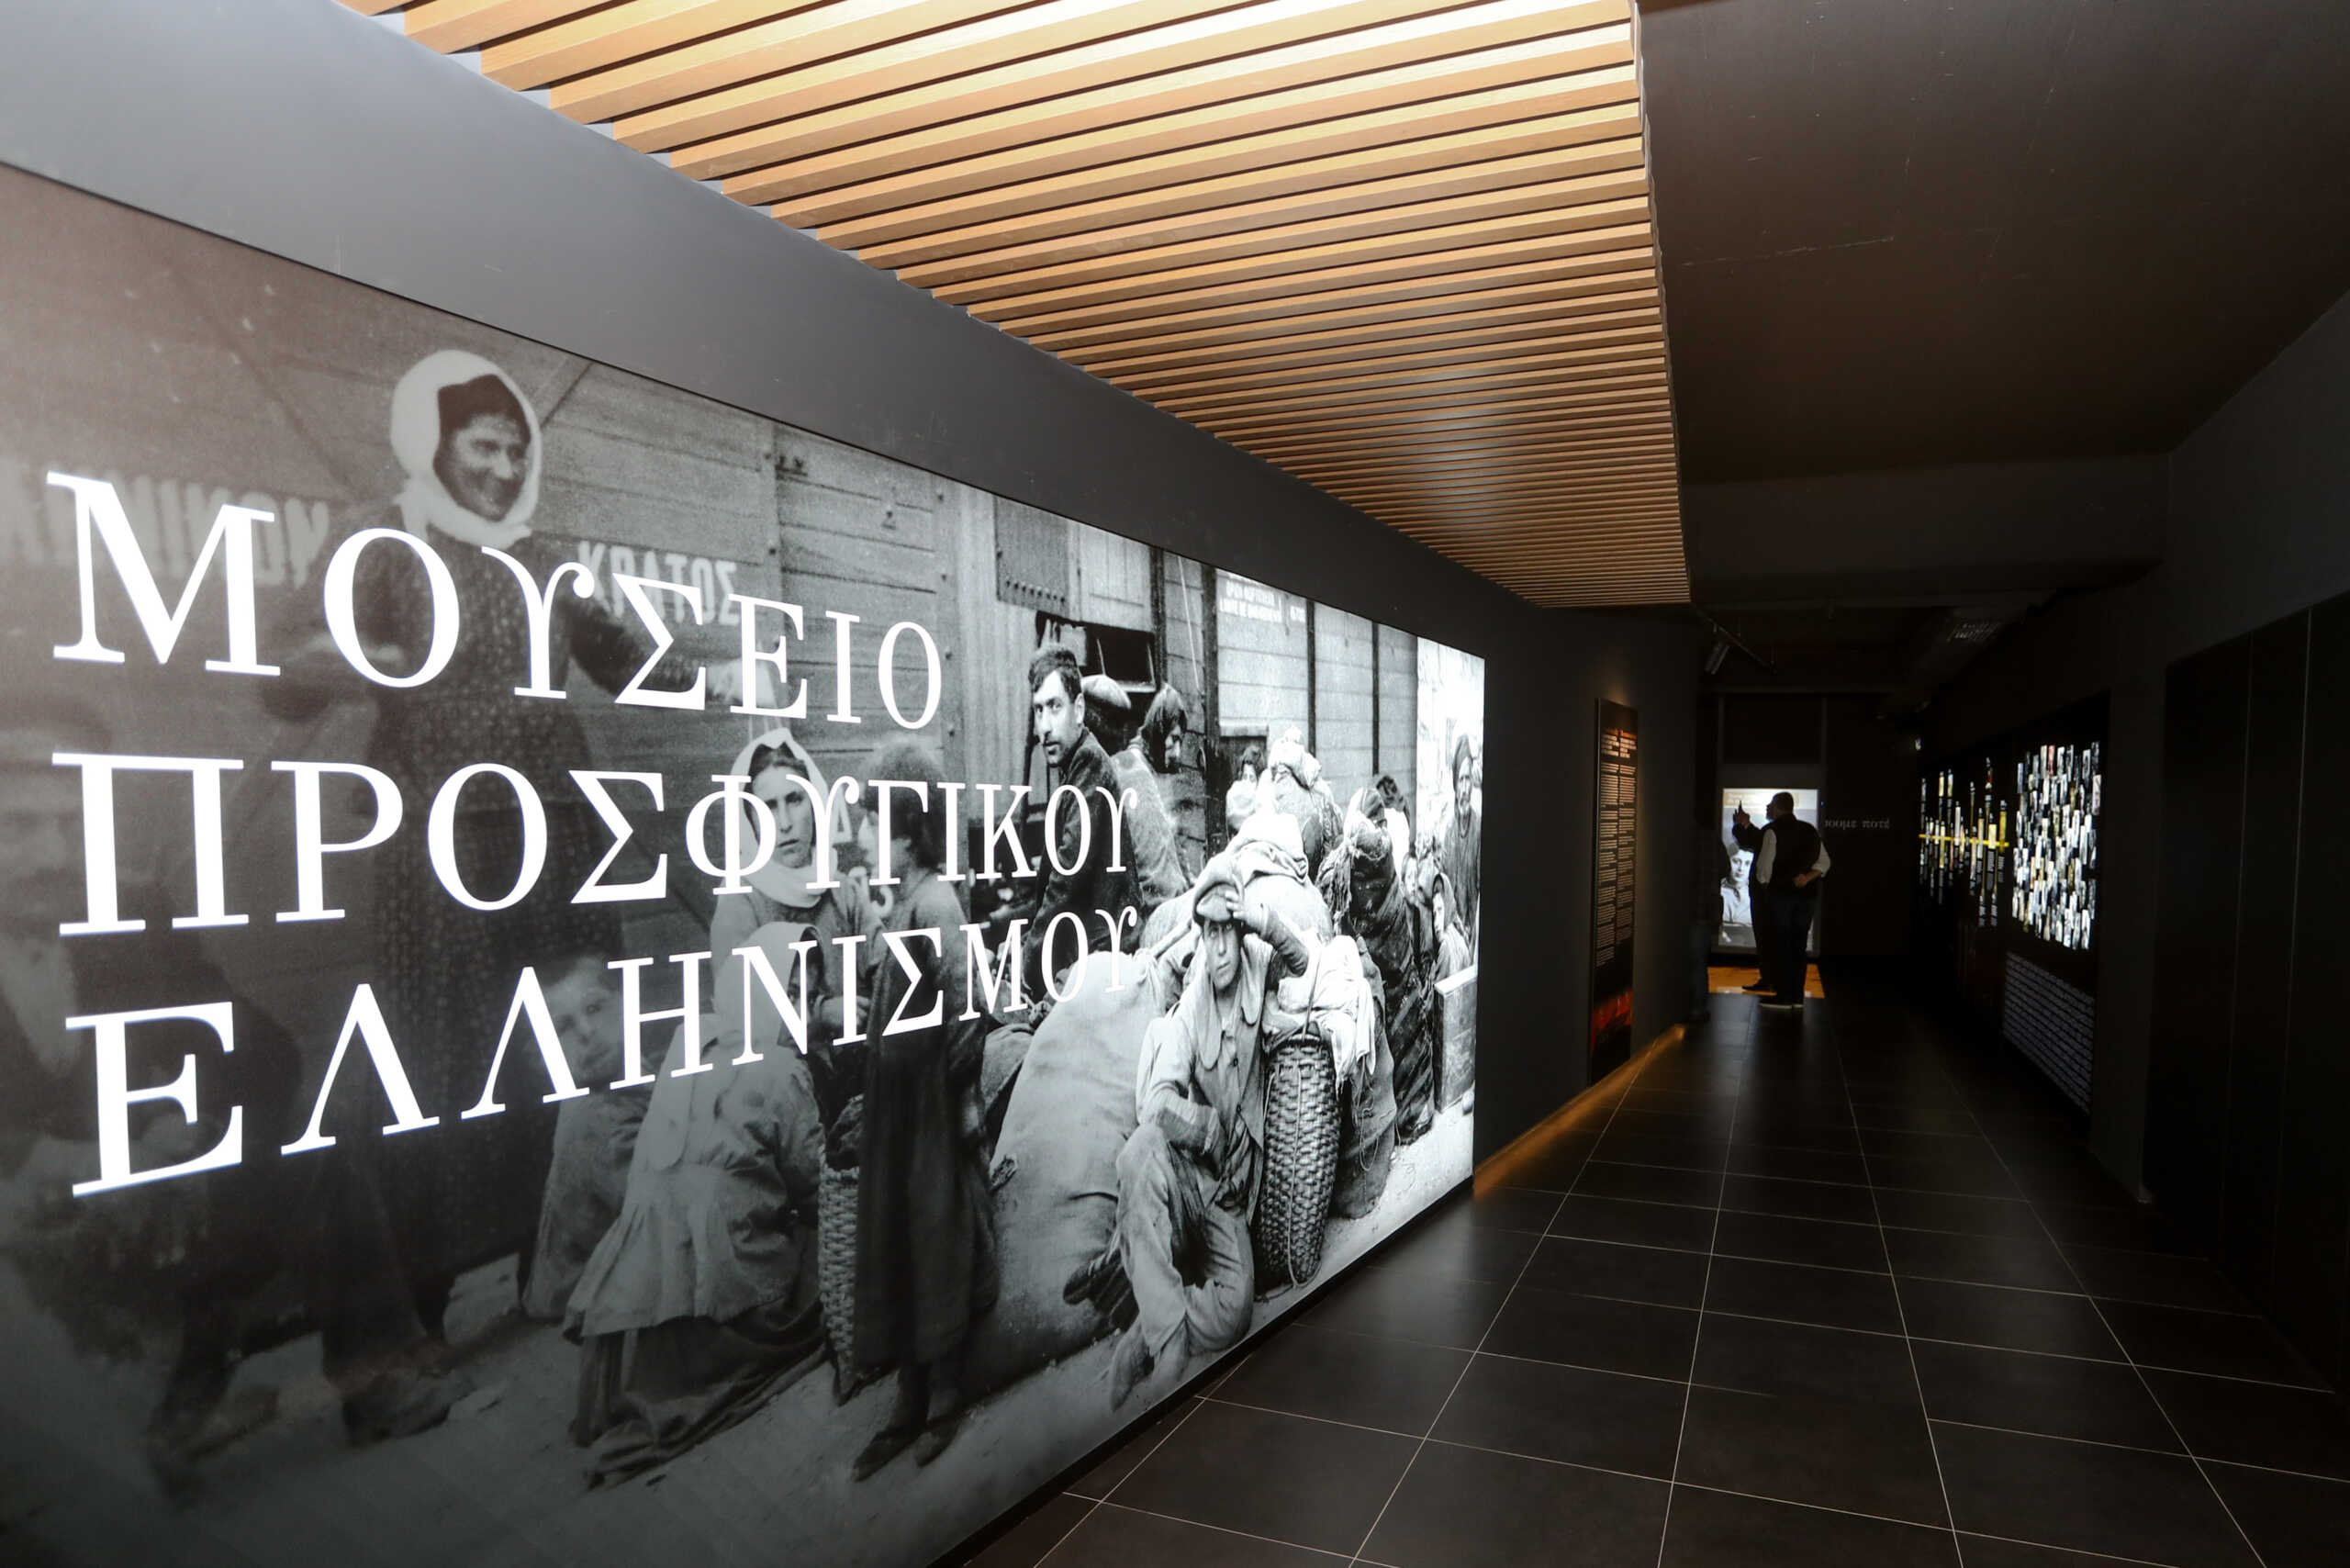 Το Μουσείο Προσφυγικού Ελληνισμού στο γήπεδο της ΑΕΚ άνοιξε τις πύλες του για το κοινό